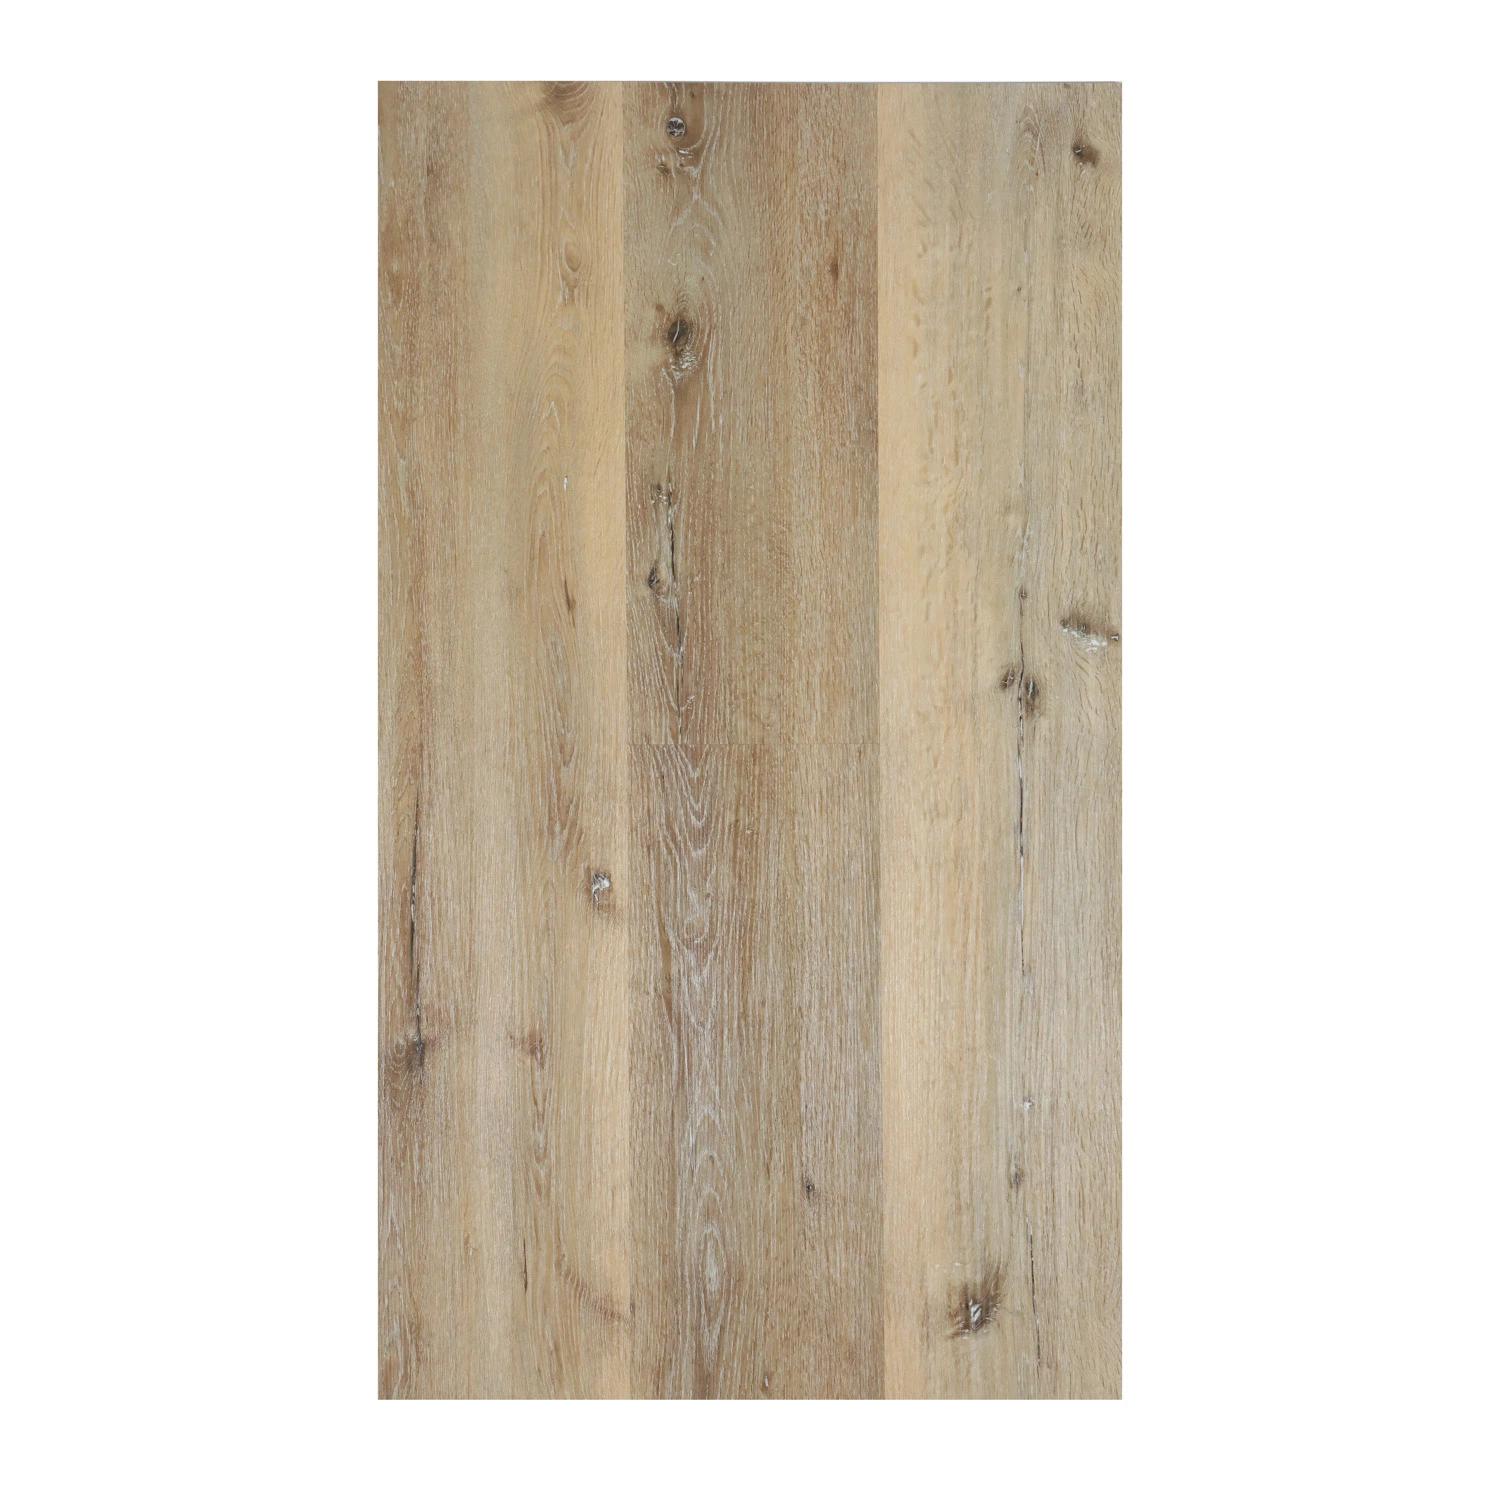 Les planchers étanches Unilin Cliquez sur la pierre de couleur en bois Caillebotis en plastique SPC IXPE EVA LVT RVP PVC vinyle rigide Plank Flooring